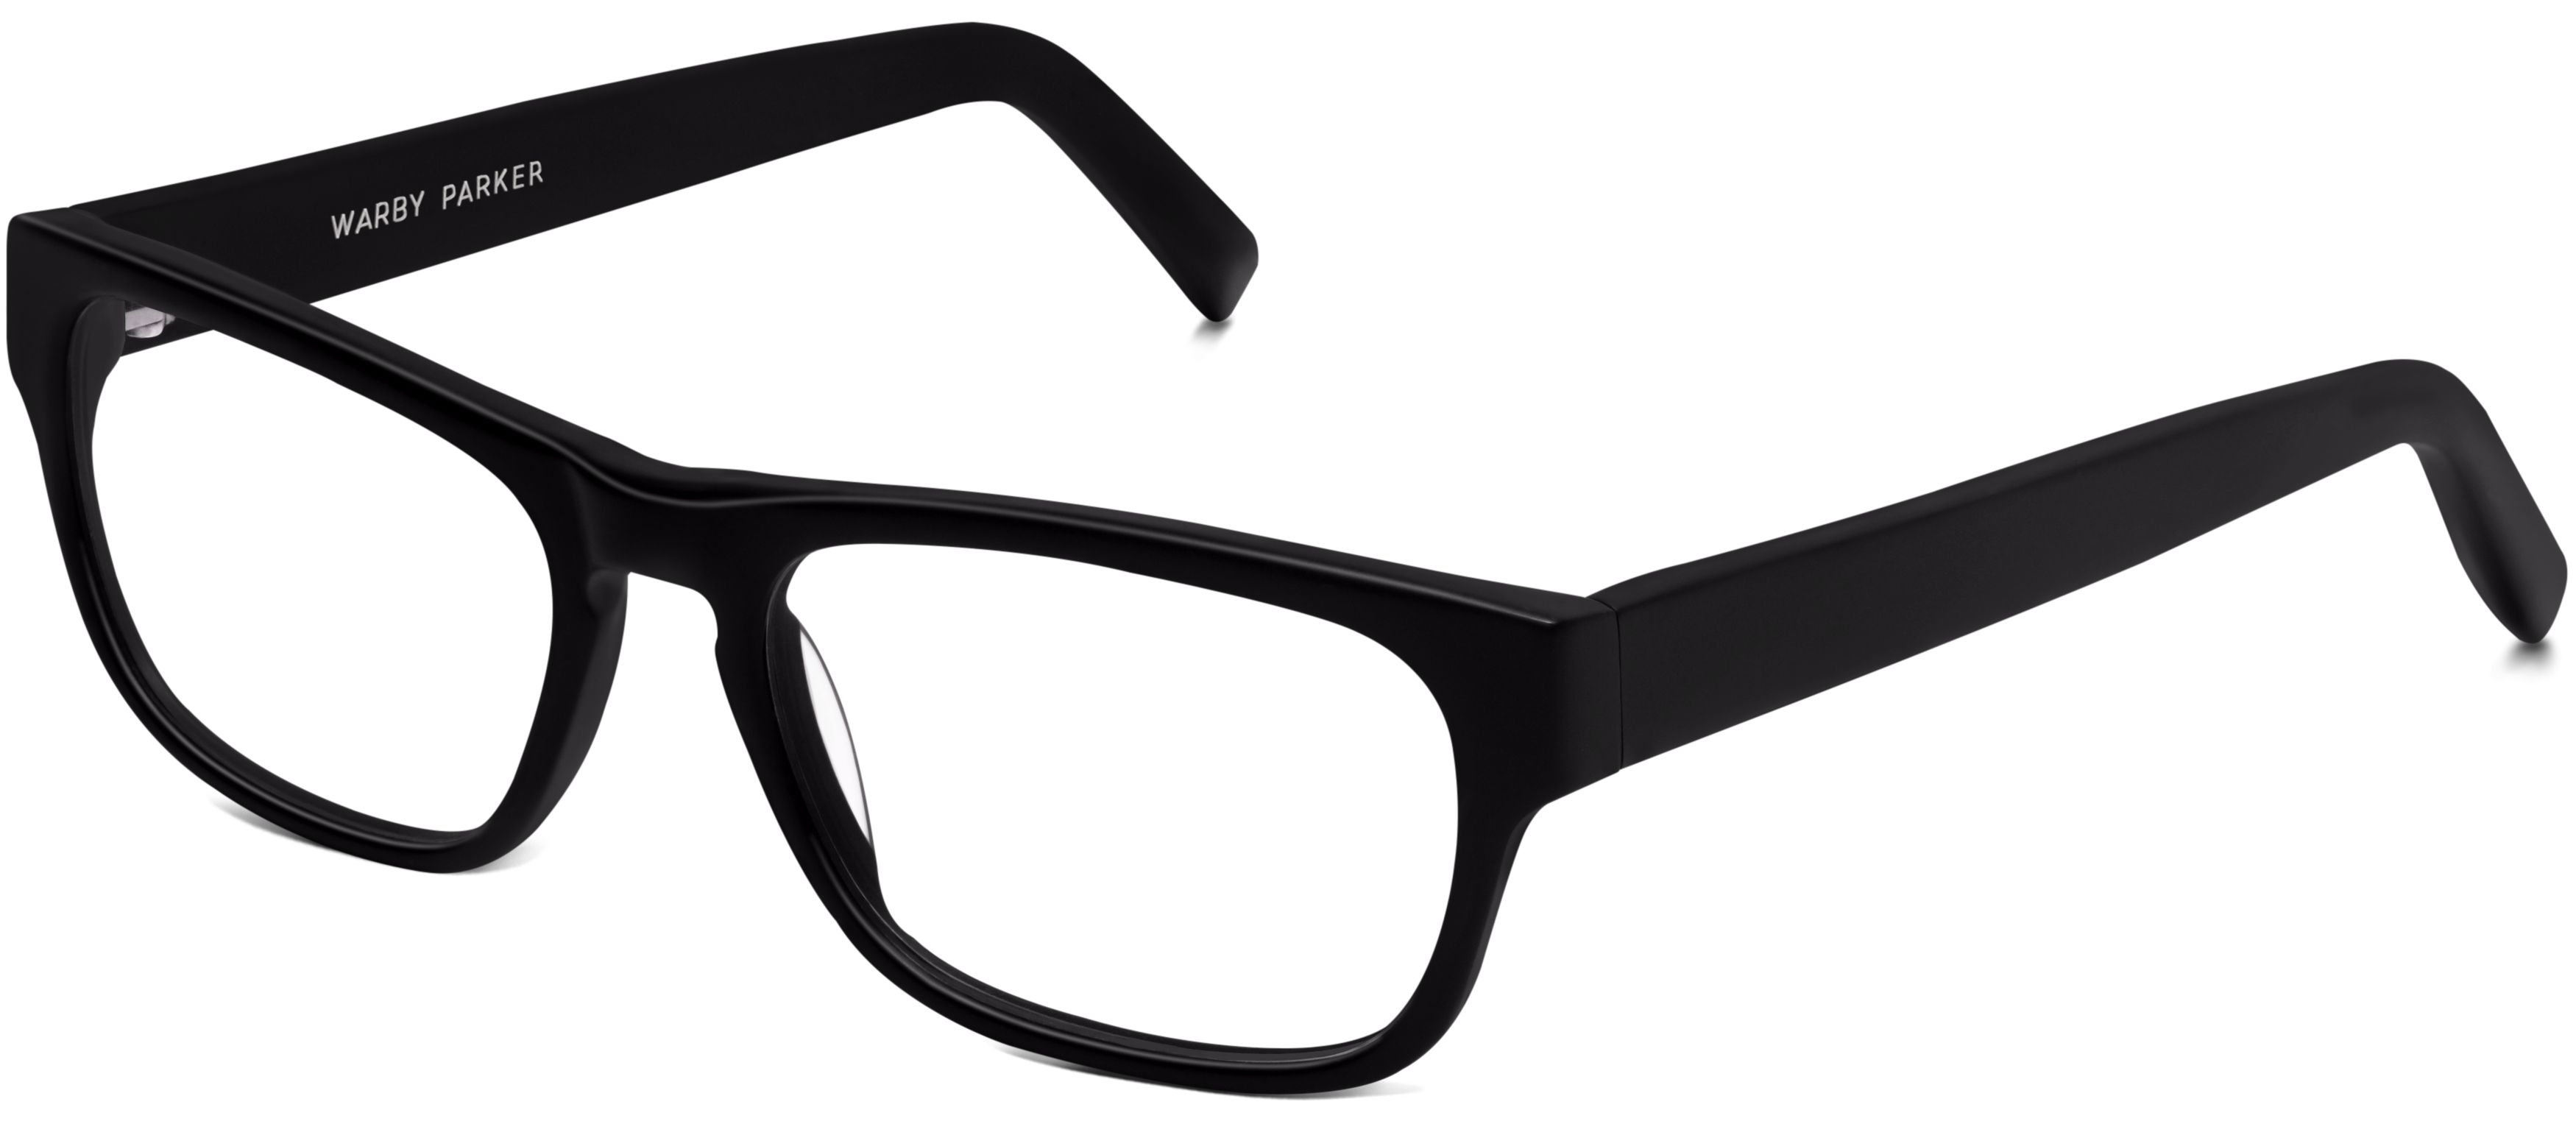 Black framed eyeglasses photo